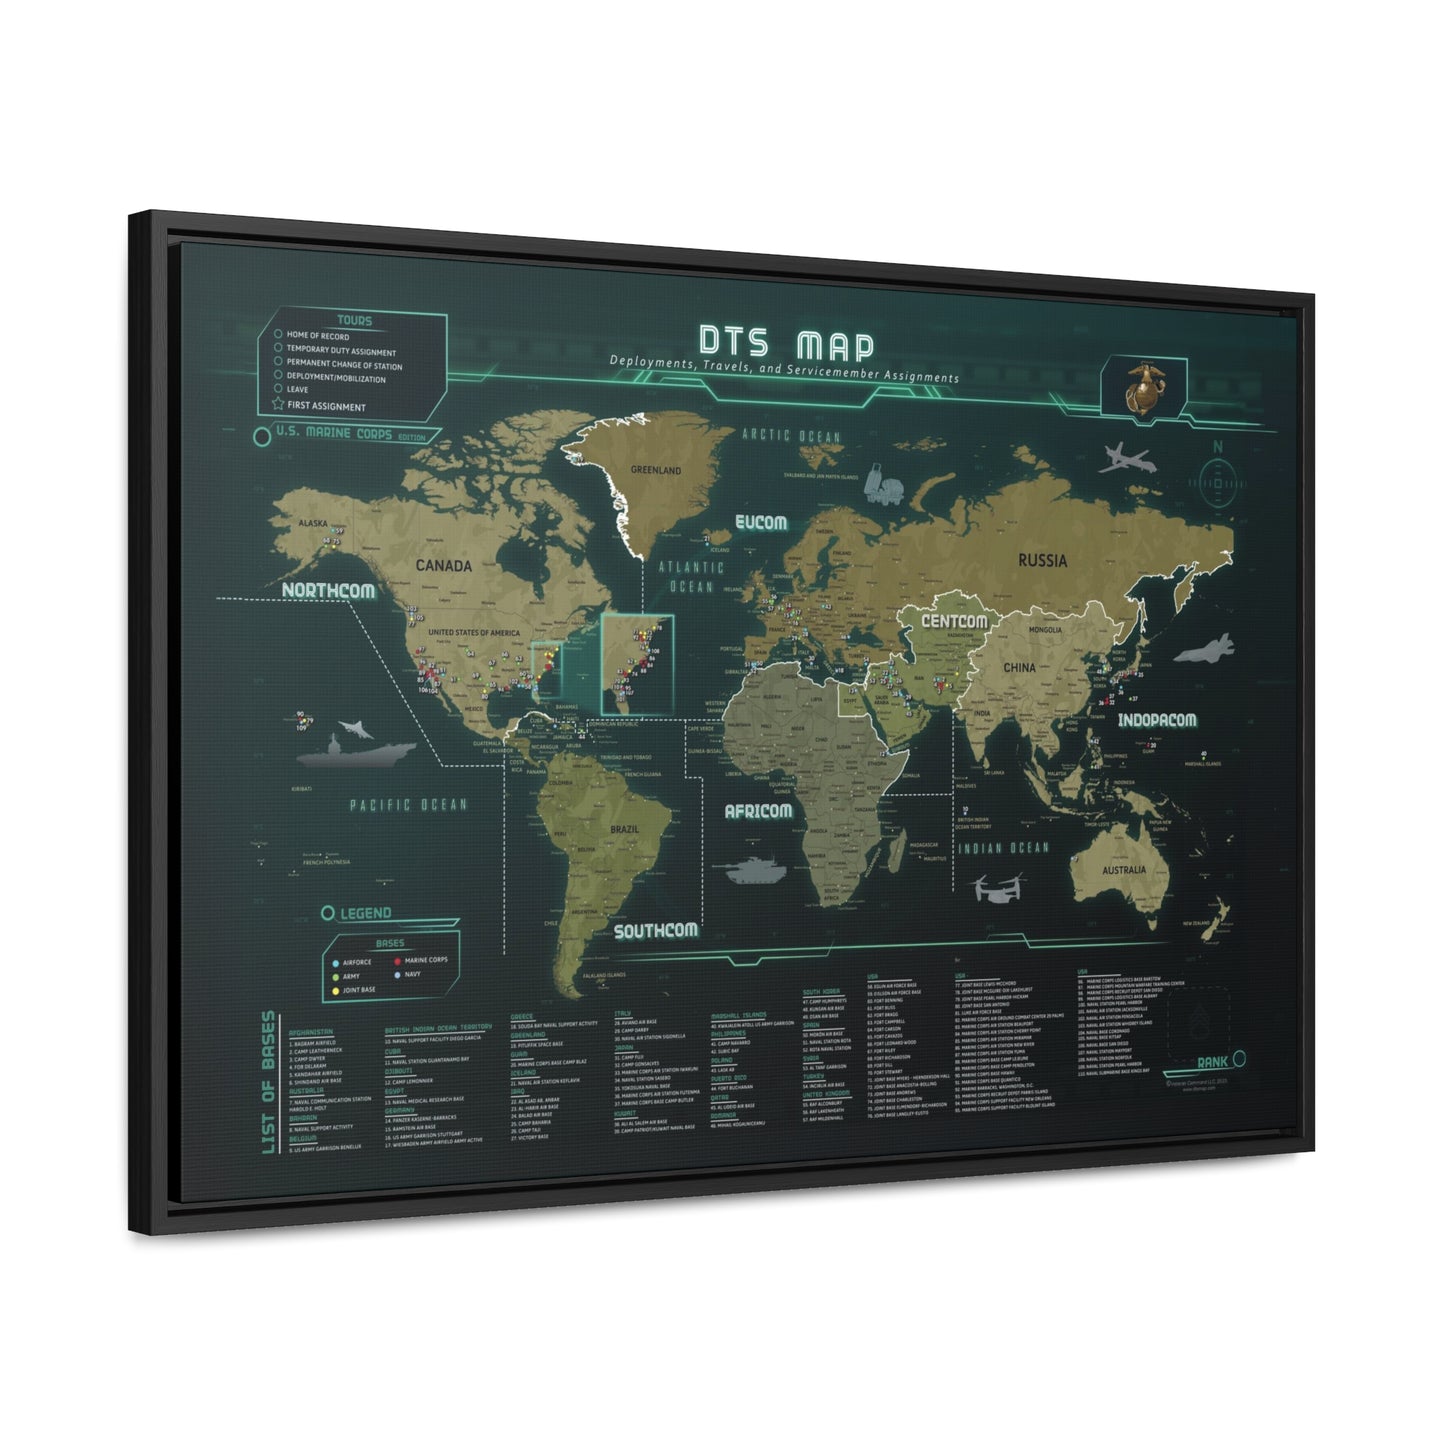 DTS Map Original (CANVAS)- Veteran Command